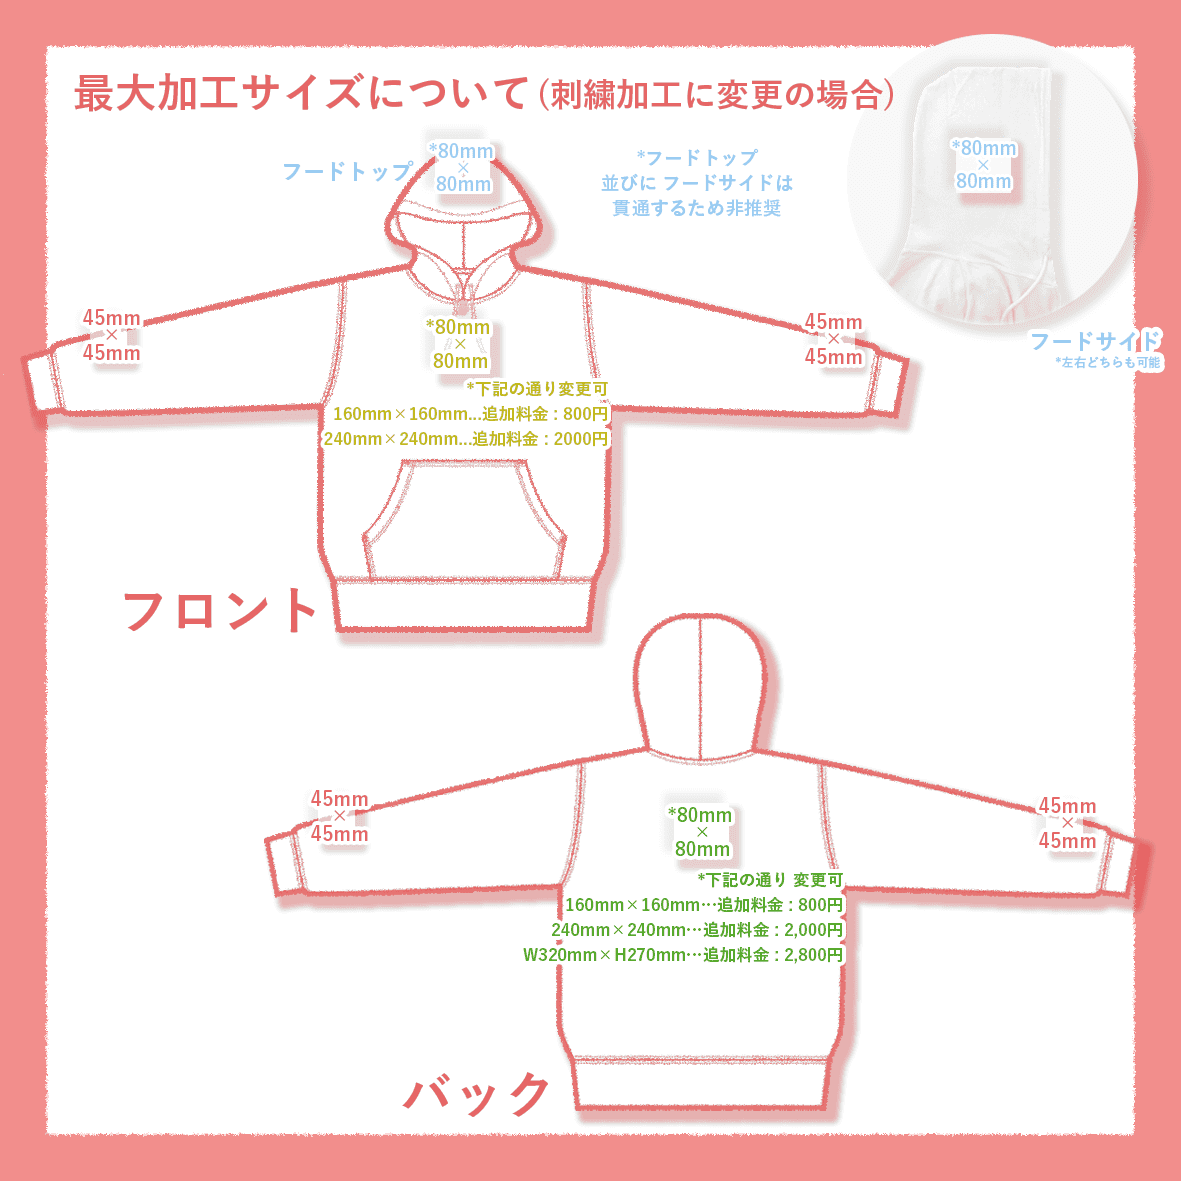 【在庫限りSALE】 Independent インデペンデント 10.0 oz Hooded Pullover Sweatshirt (品番IND4000_SO)